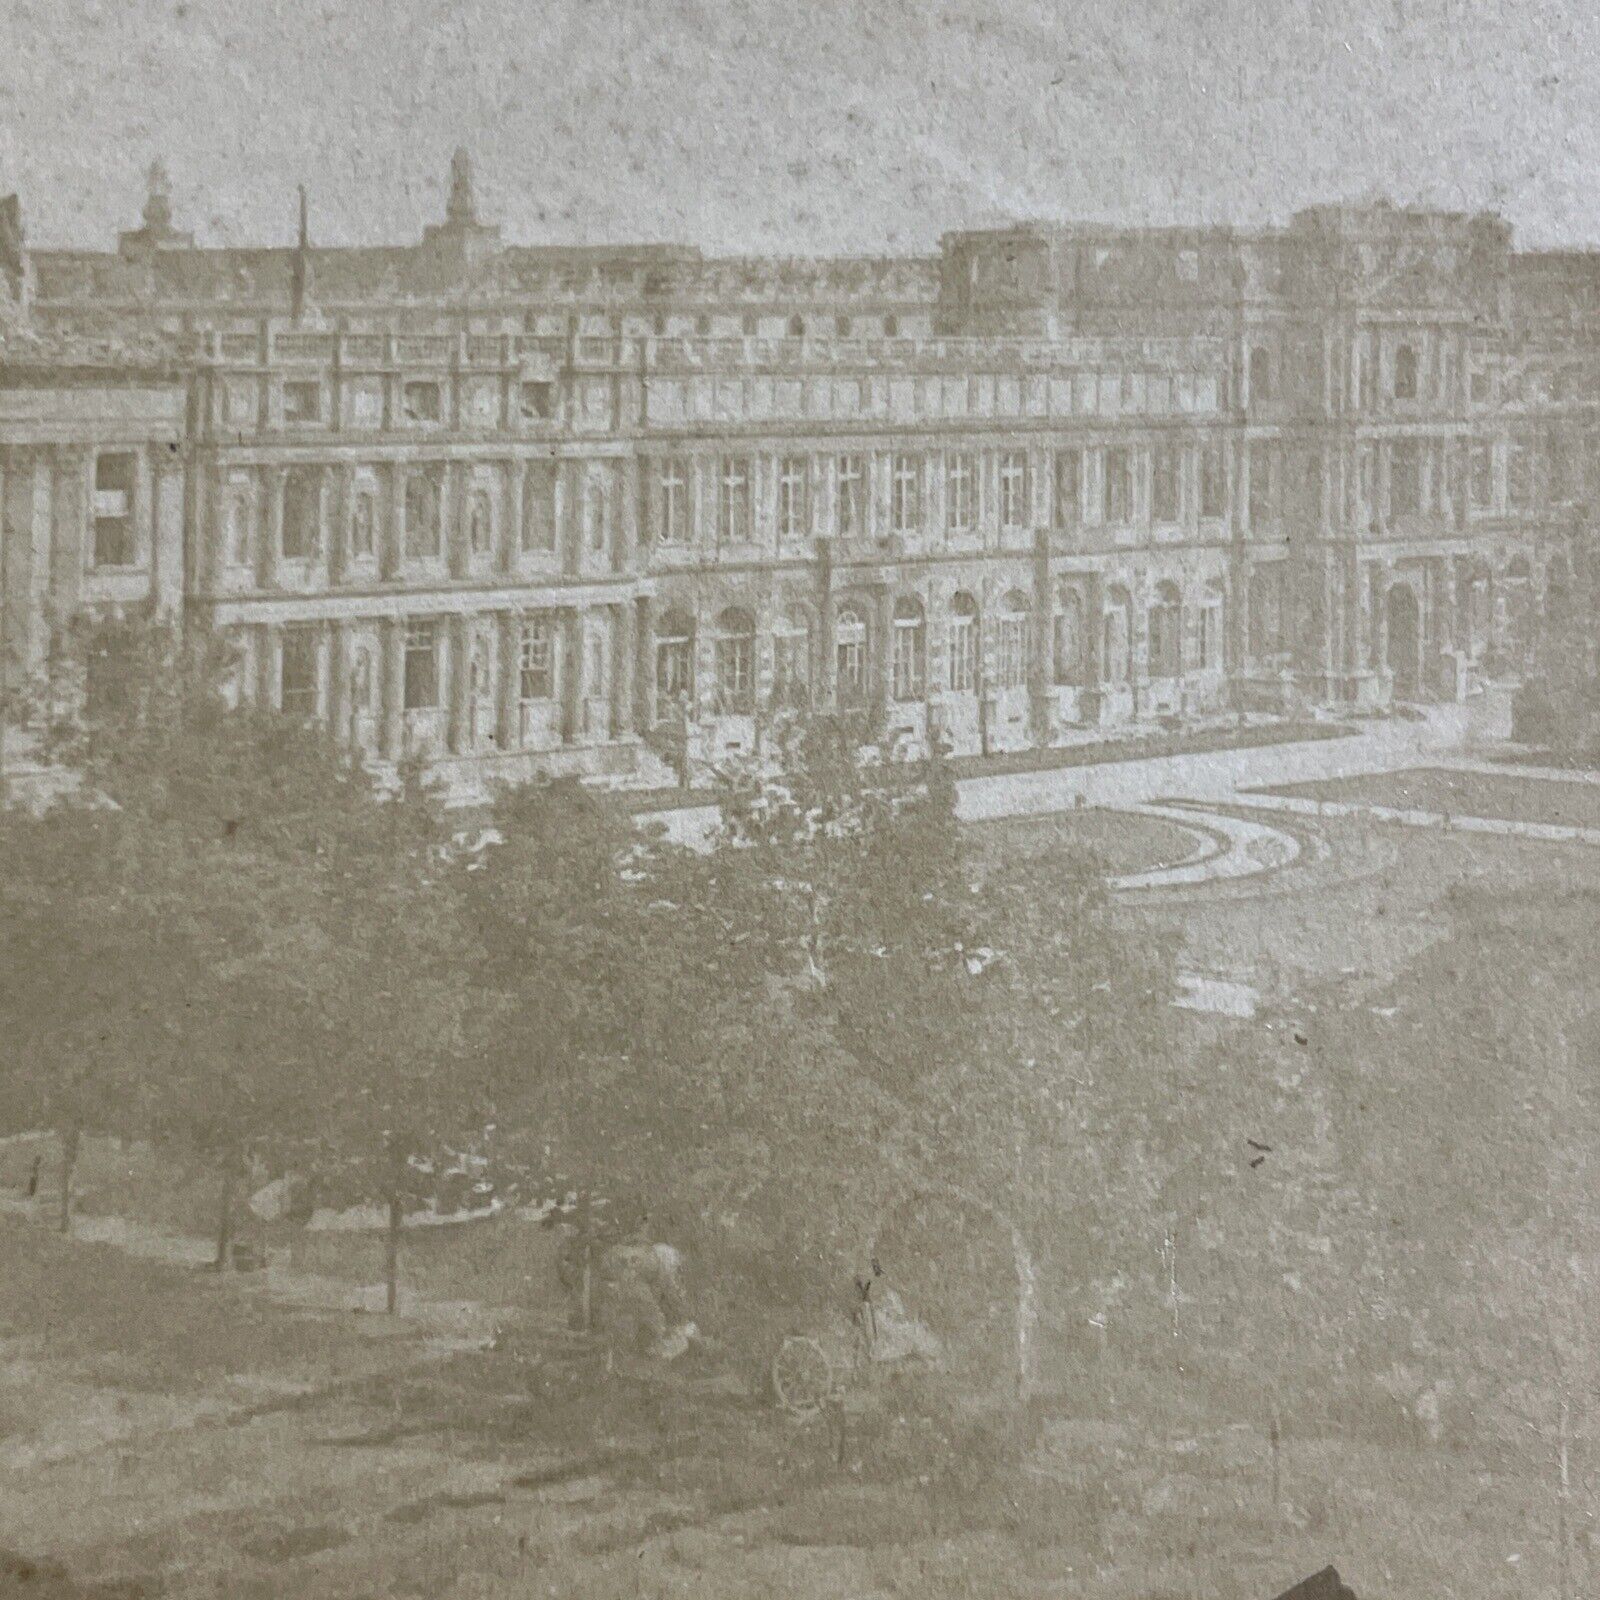 Antique 1870 Palais Des Tuileries Paris France Stereoview Photo Card P5125